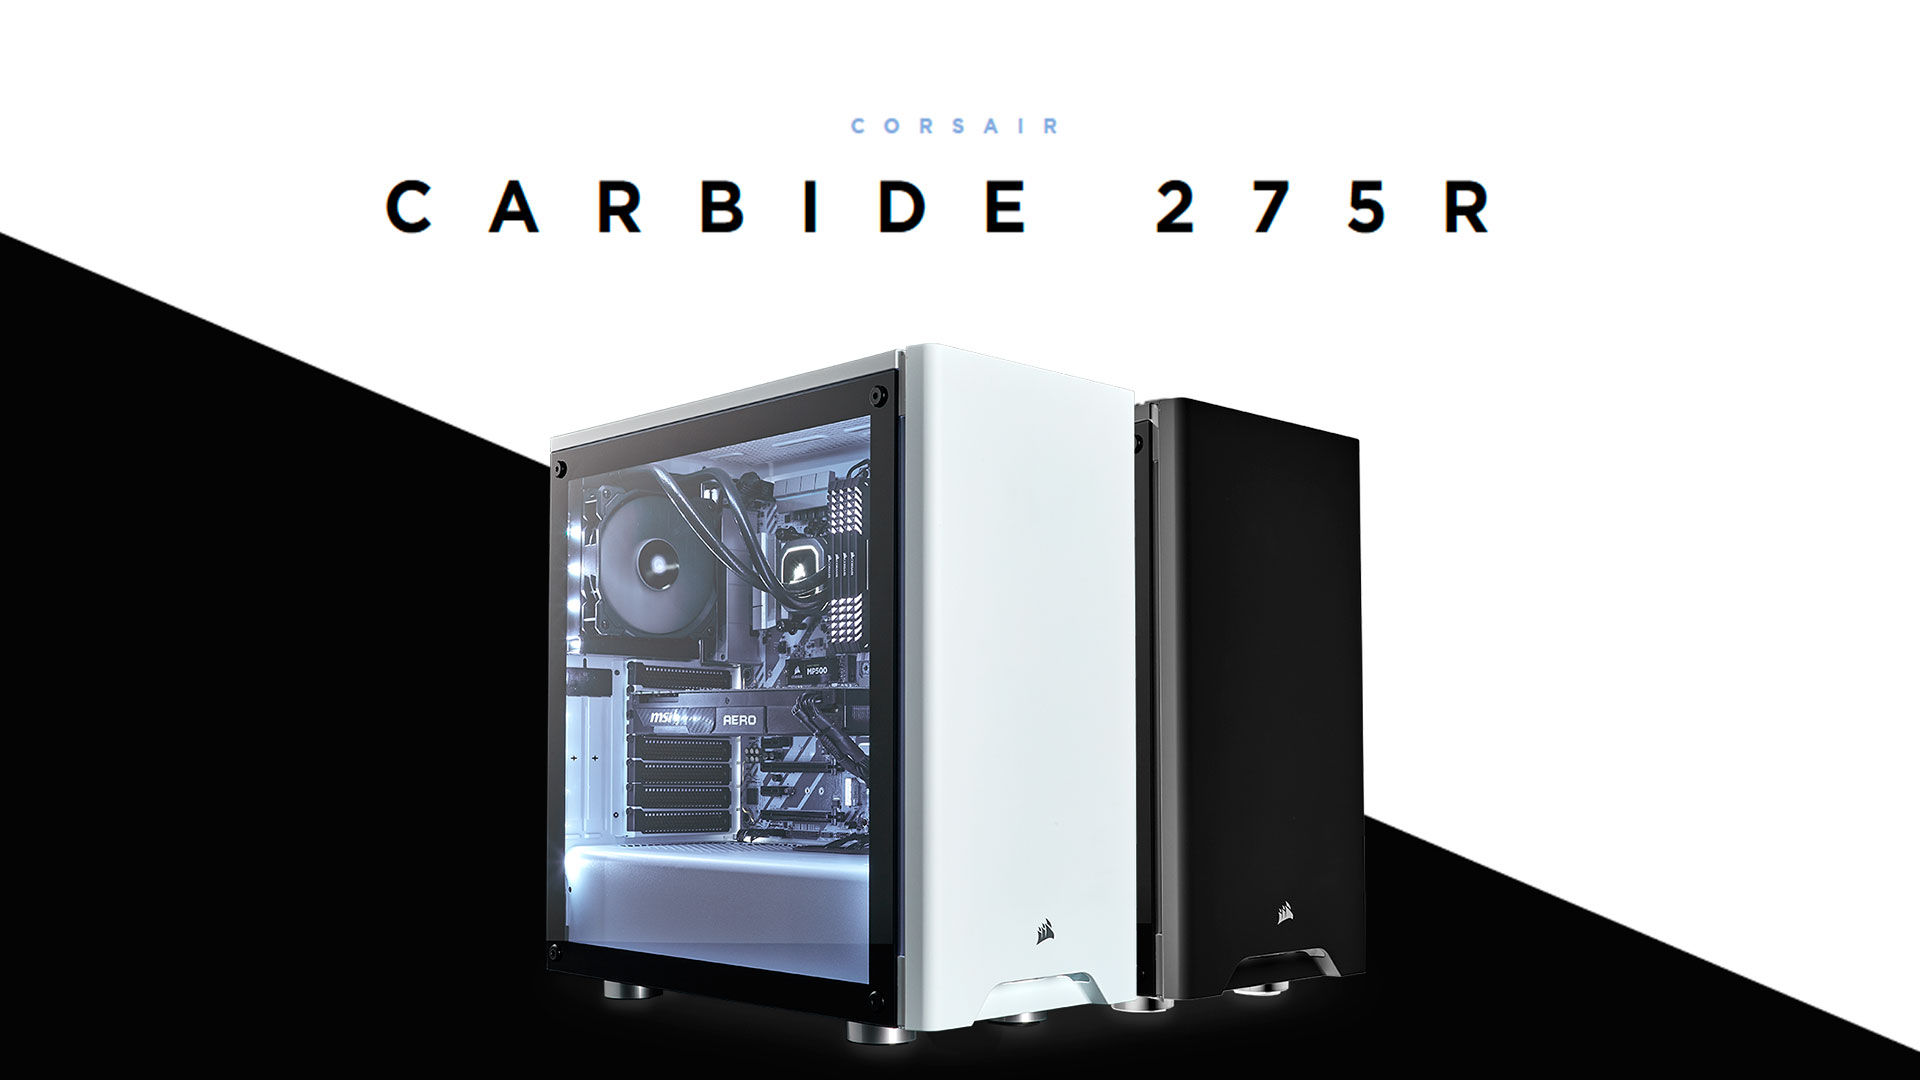 Carbide Series 275R